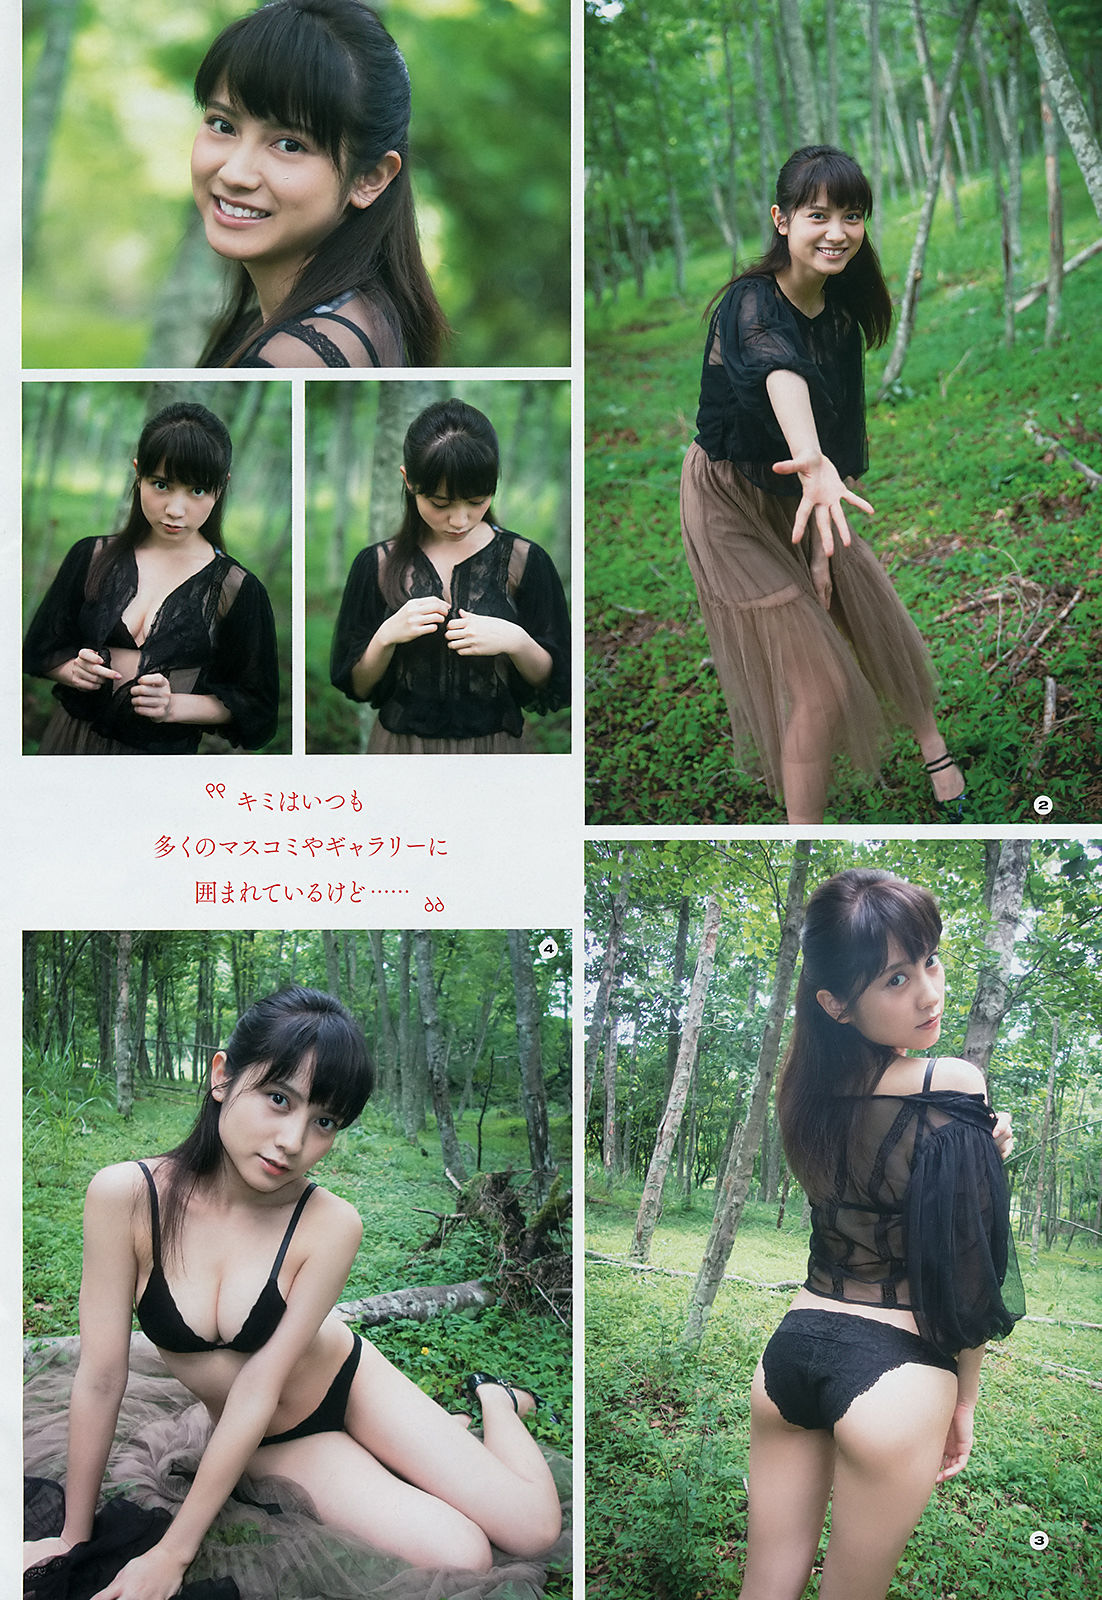 [Young Gangan]美胸美乳性感少女:桃月なしこ高品质壁纸图片珍藏版(24P)